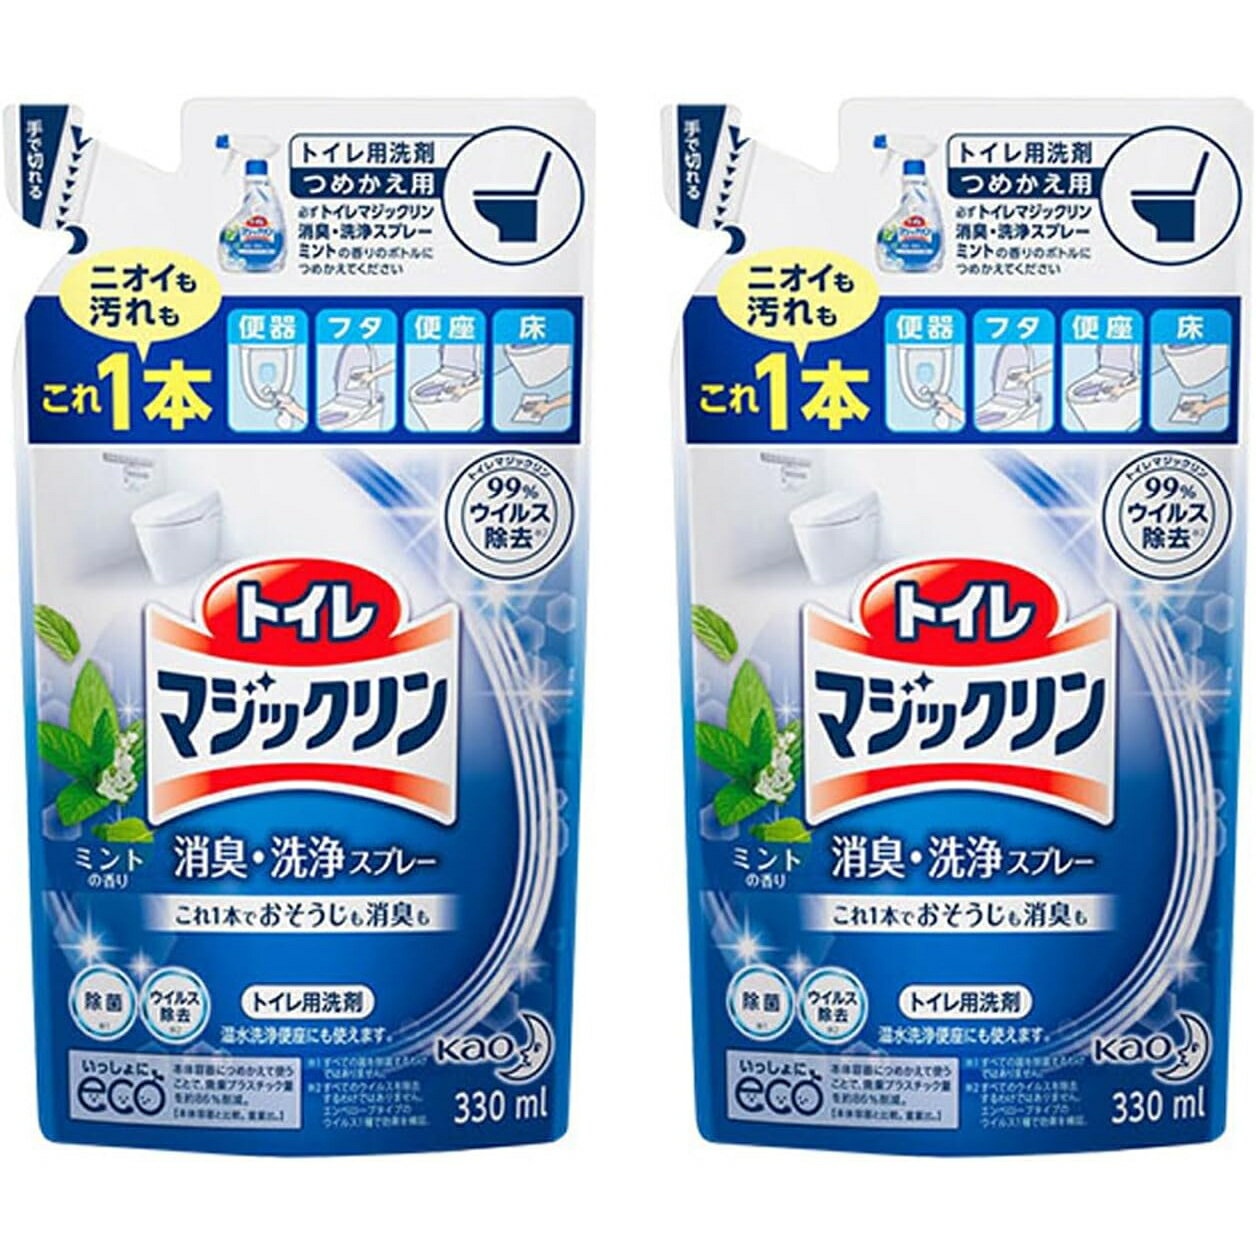 【2袋セット】トイレマジックリン トイレ用洗剤 ミント 詰め替え 330ml